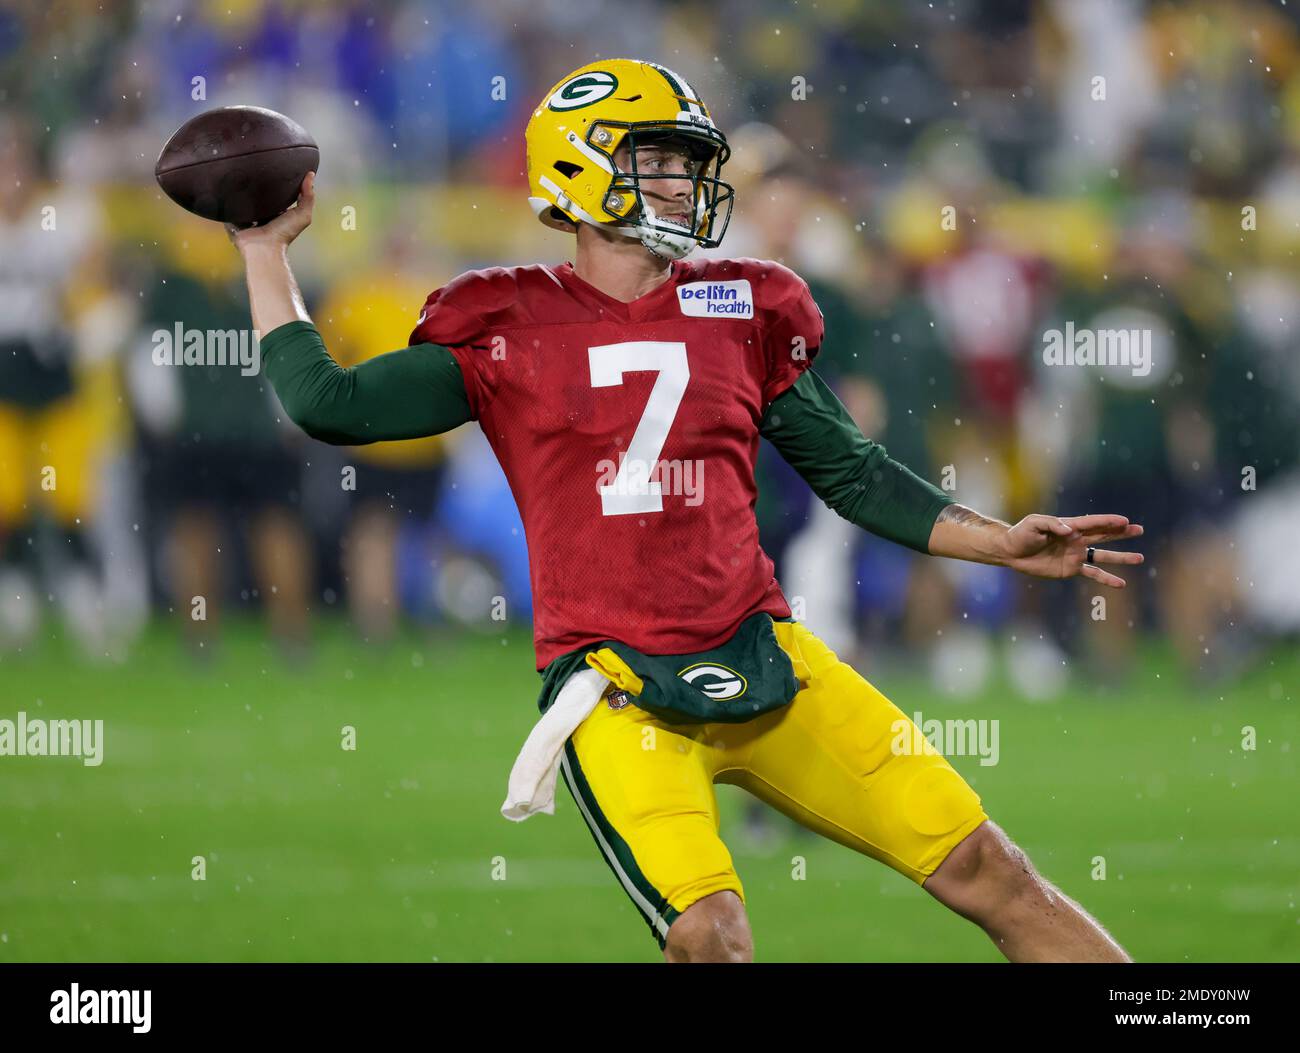 Green Bay Packers' quarterback Kurt Benkert during NFL football